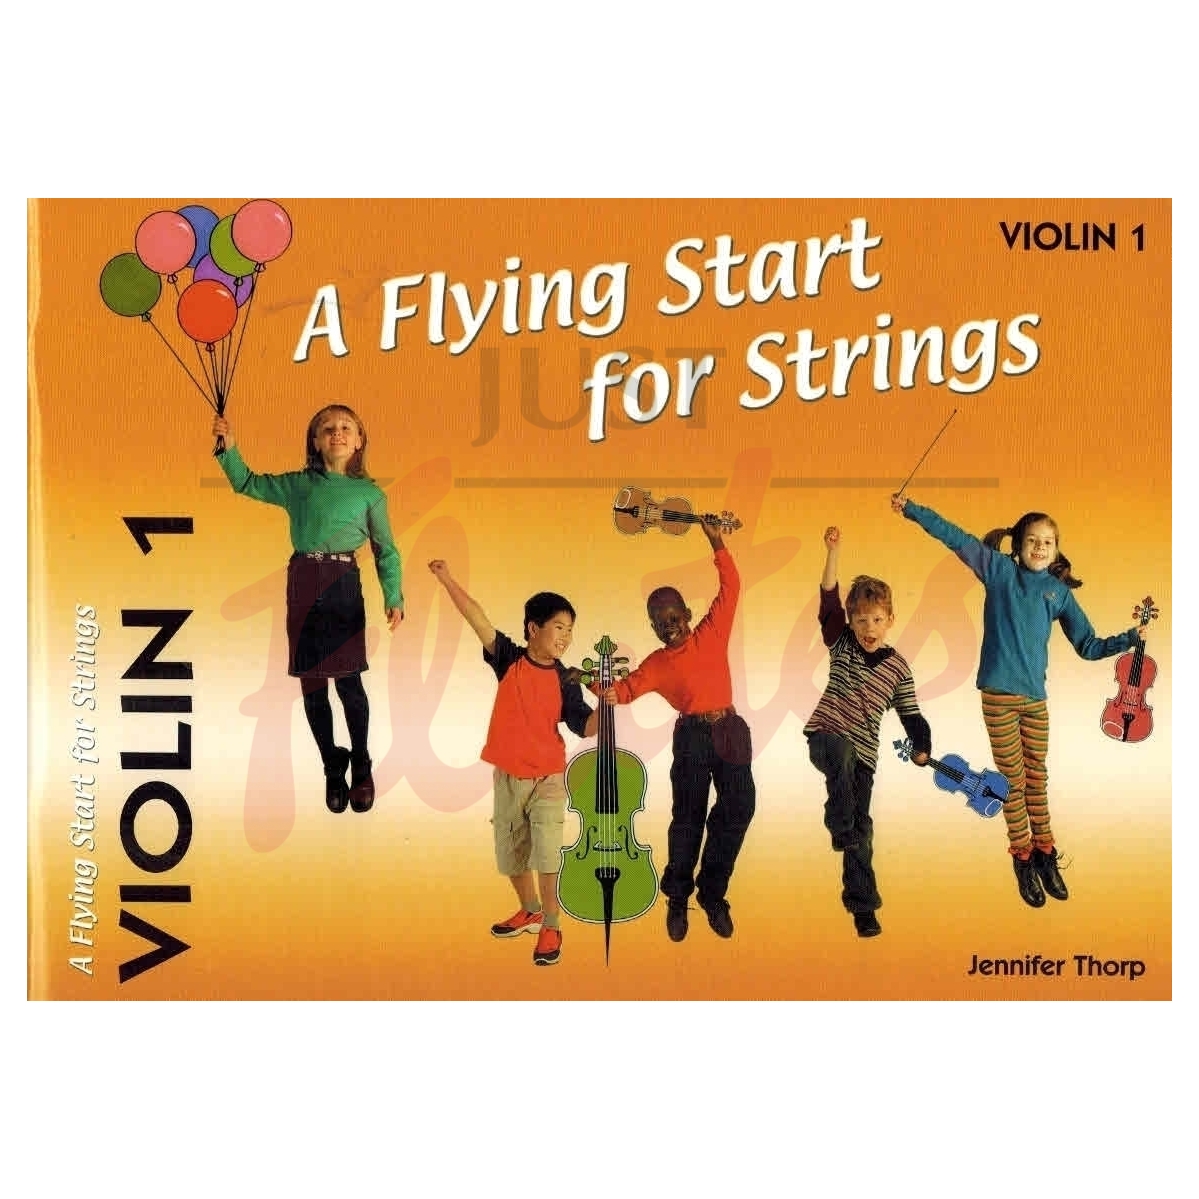 A Flying Start for Strings - Violin 1